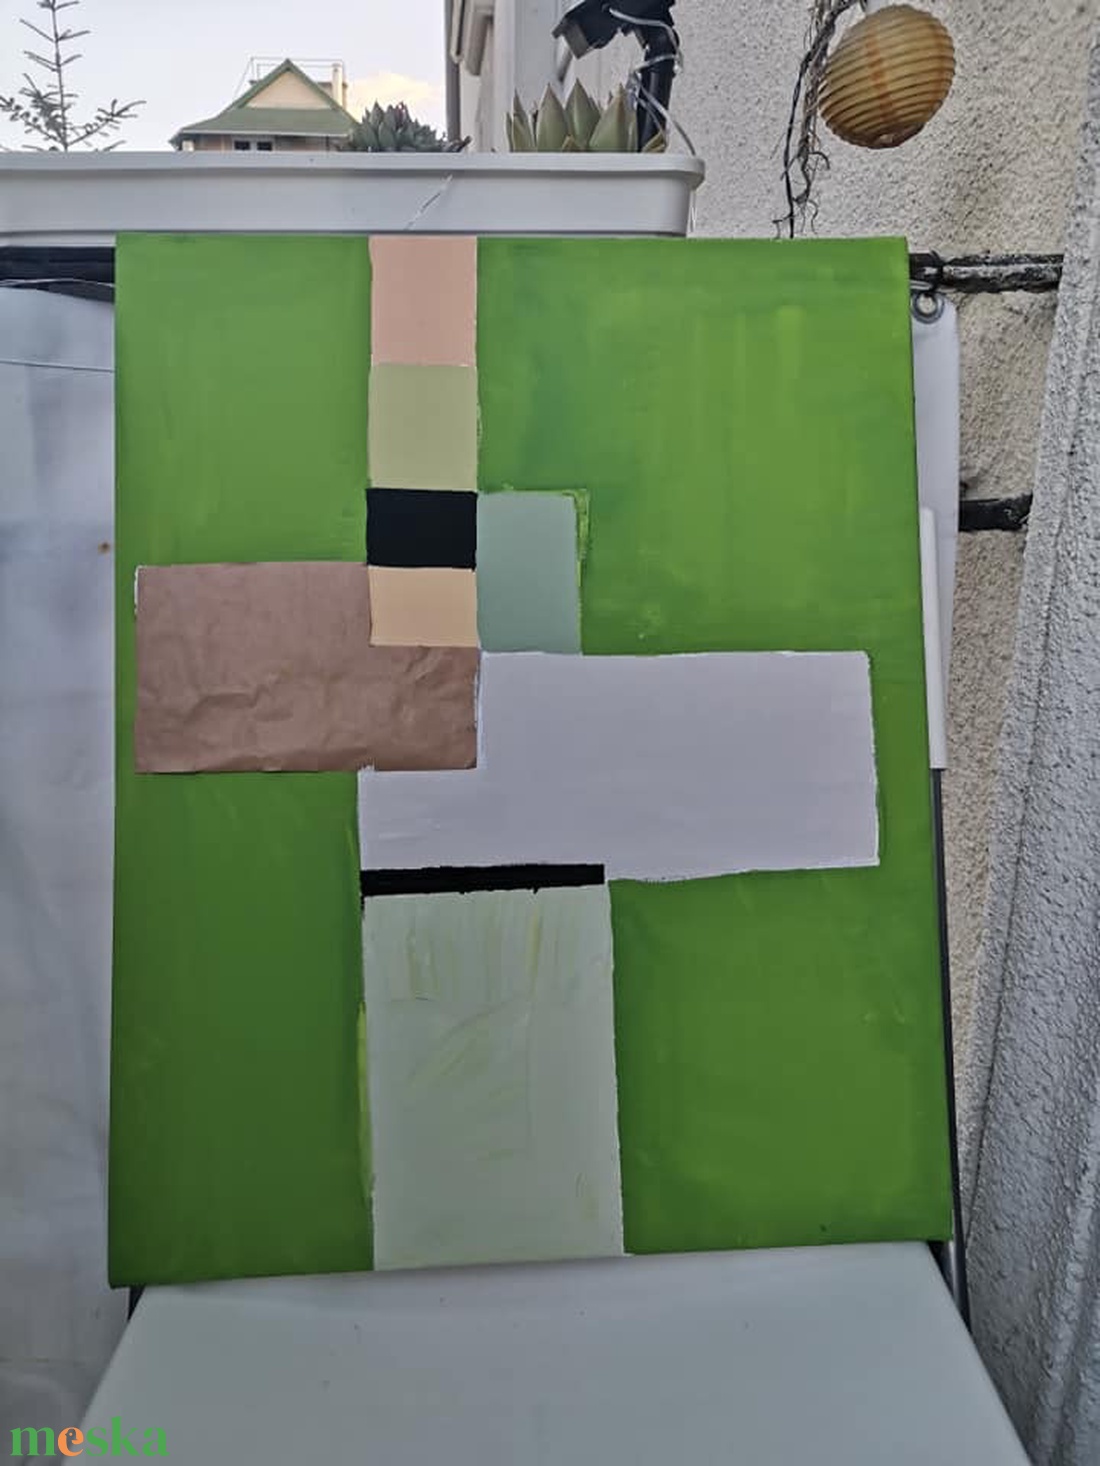 zöld geometria - művészet - festmény - festmény vegyes technika - Meska.hu